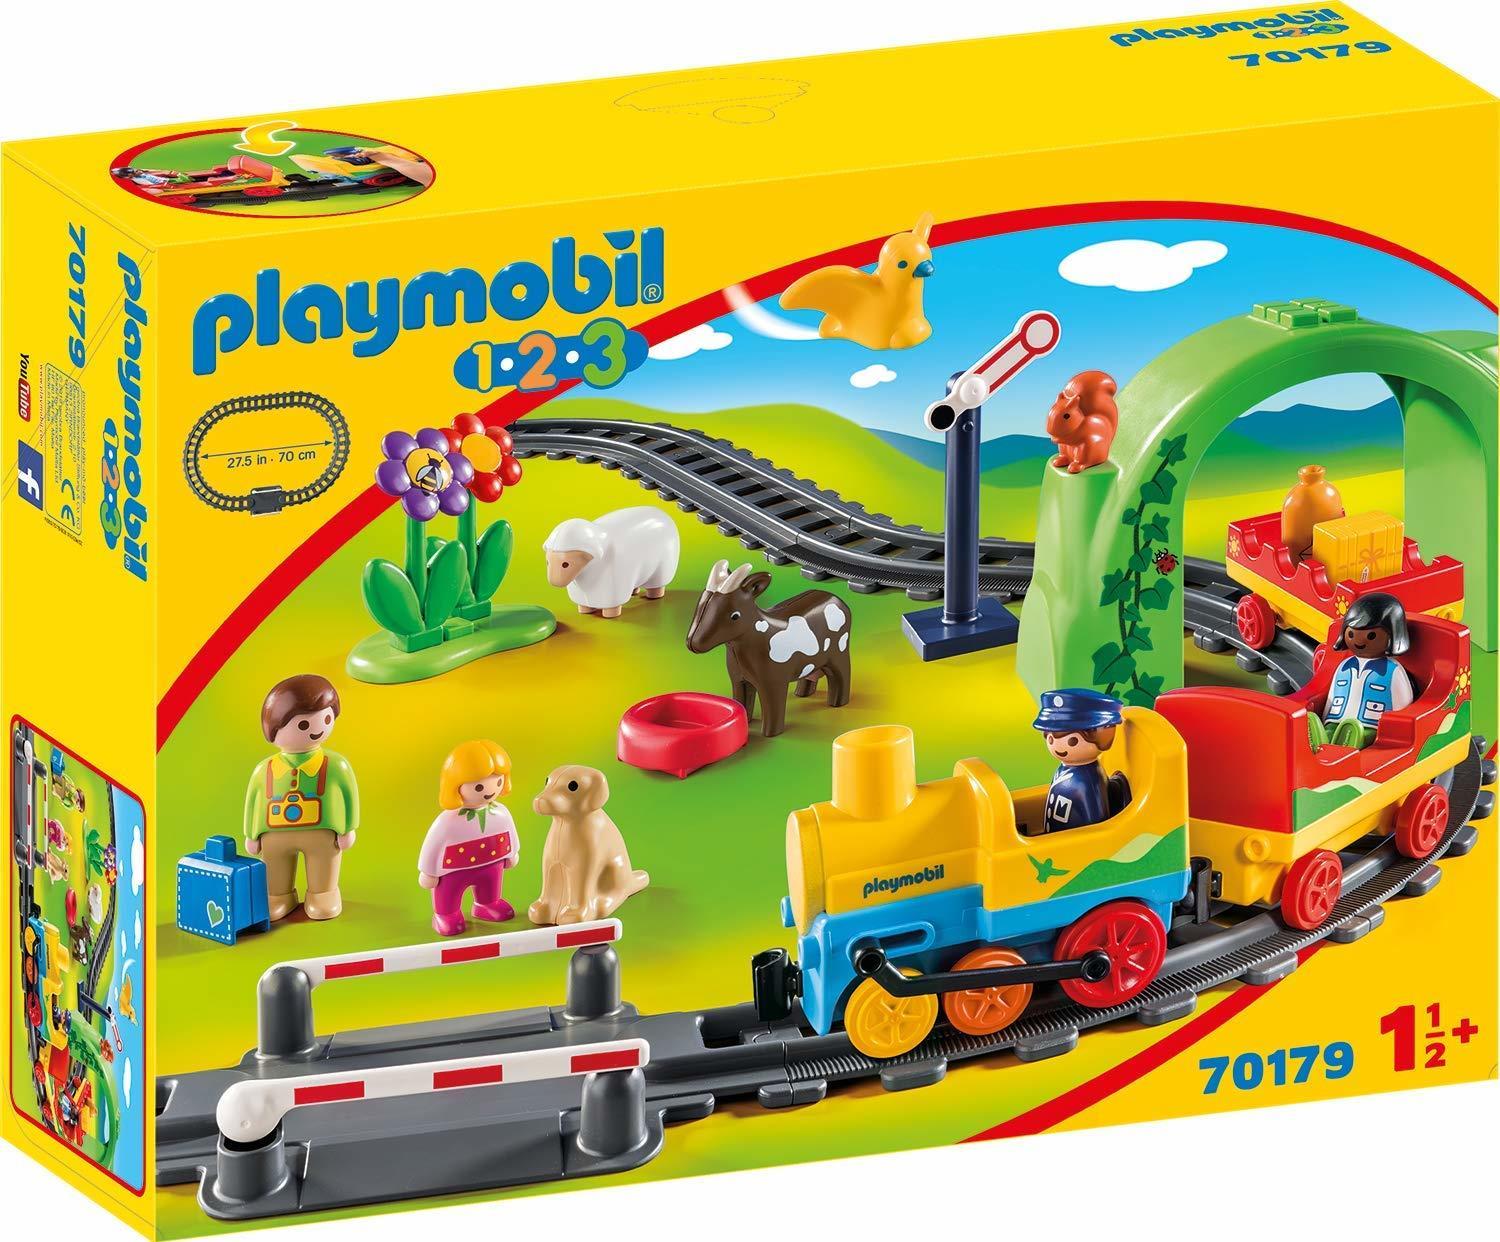 Playmobil 1.2.3 70179 - Eisenbahn & Zug - Junge/Mädchen - 1,5 Jahr(e) - Mehrfarben (70179)